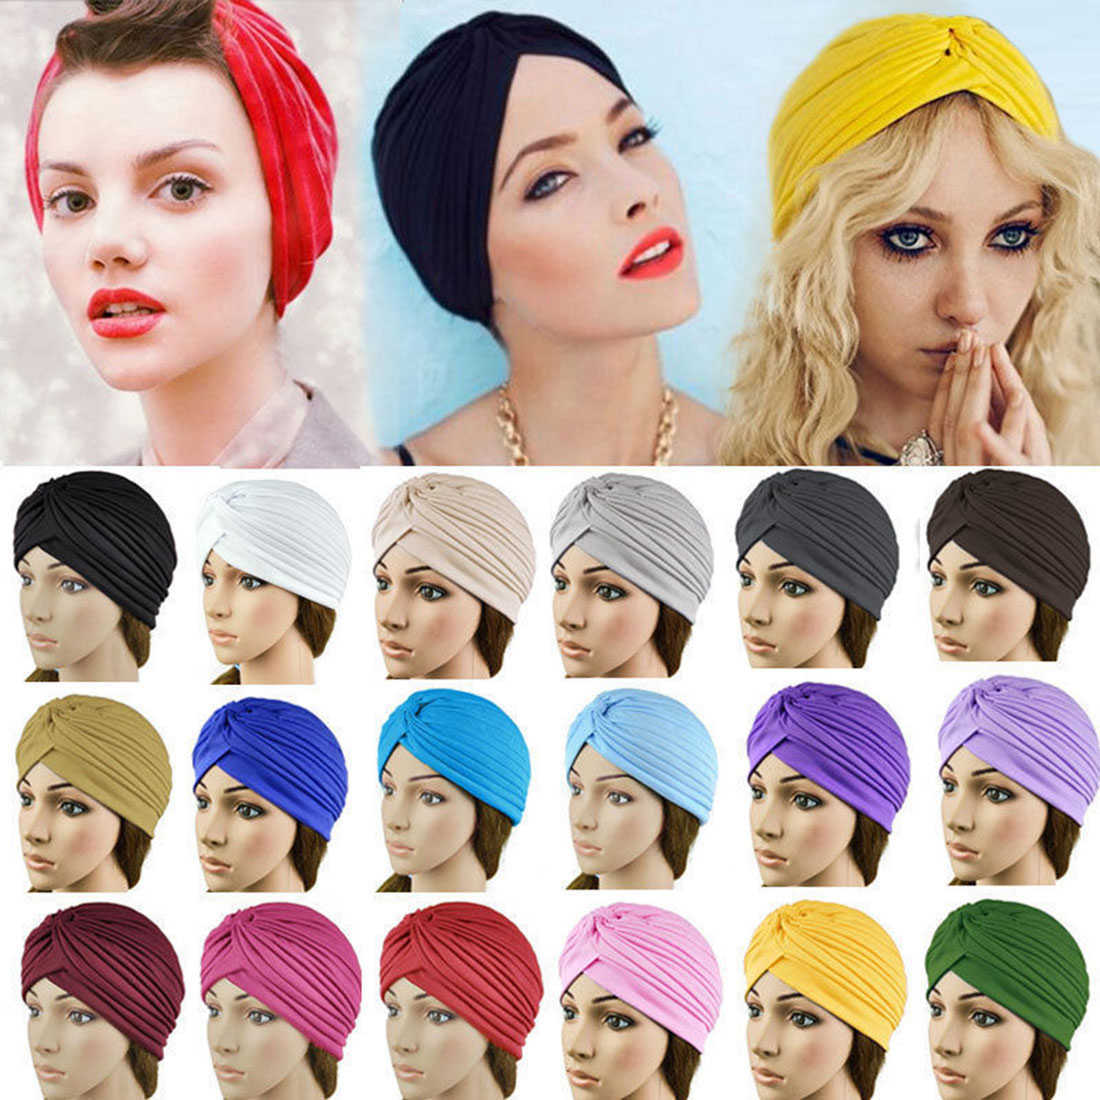 Stirnbänder 2019 Hot Bandanas Frauen Stretchy Turban Muslim Hut Stirnband Warp Weibliche Chemo Hijab Geknotete Indische Kappe Erwachsene Kopf Wrap für Frauen T221007